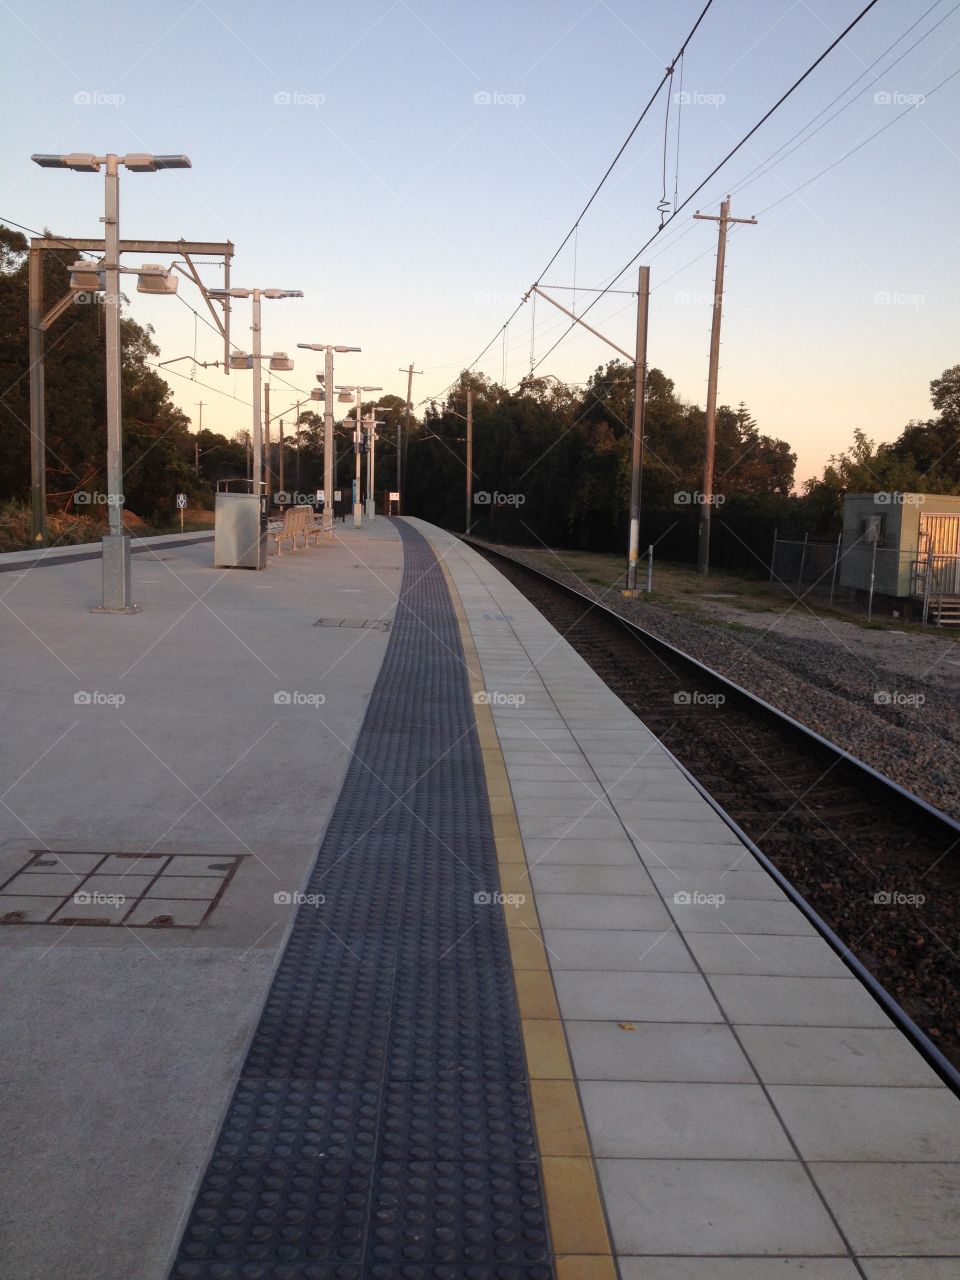 Cardiff NSW train station at dawn